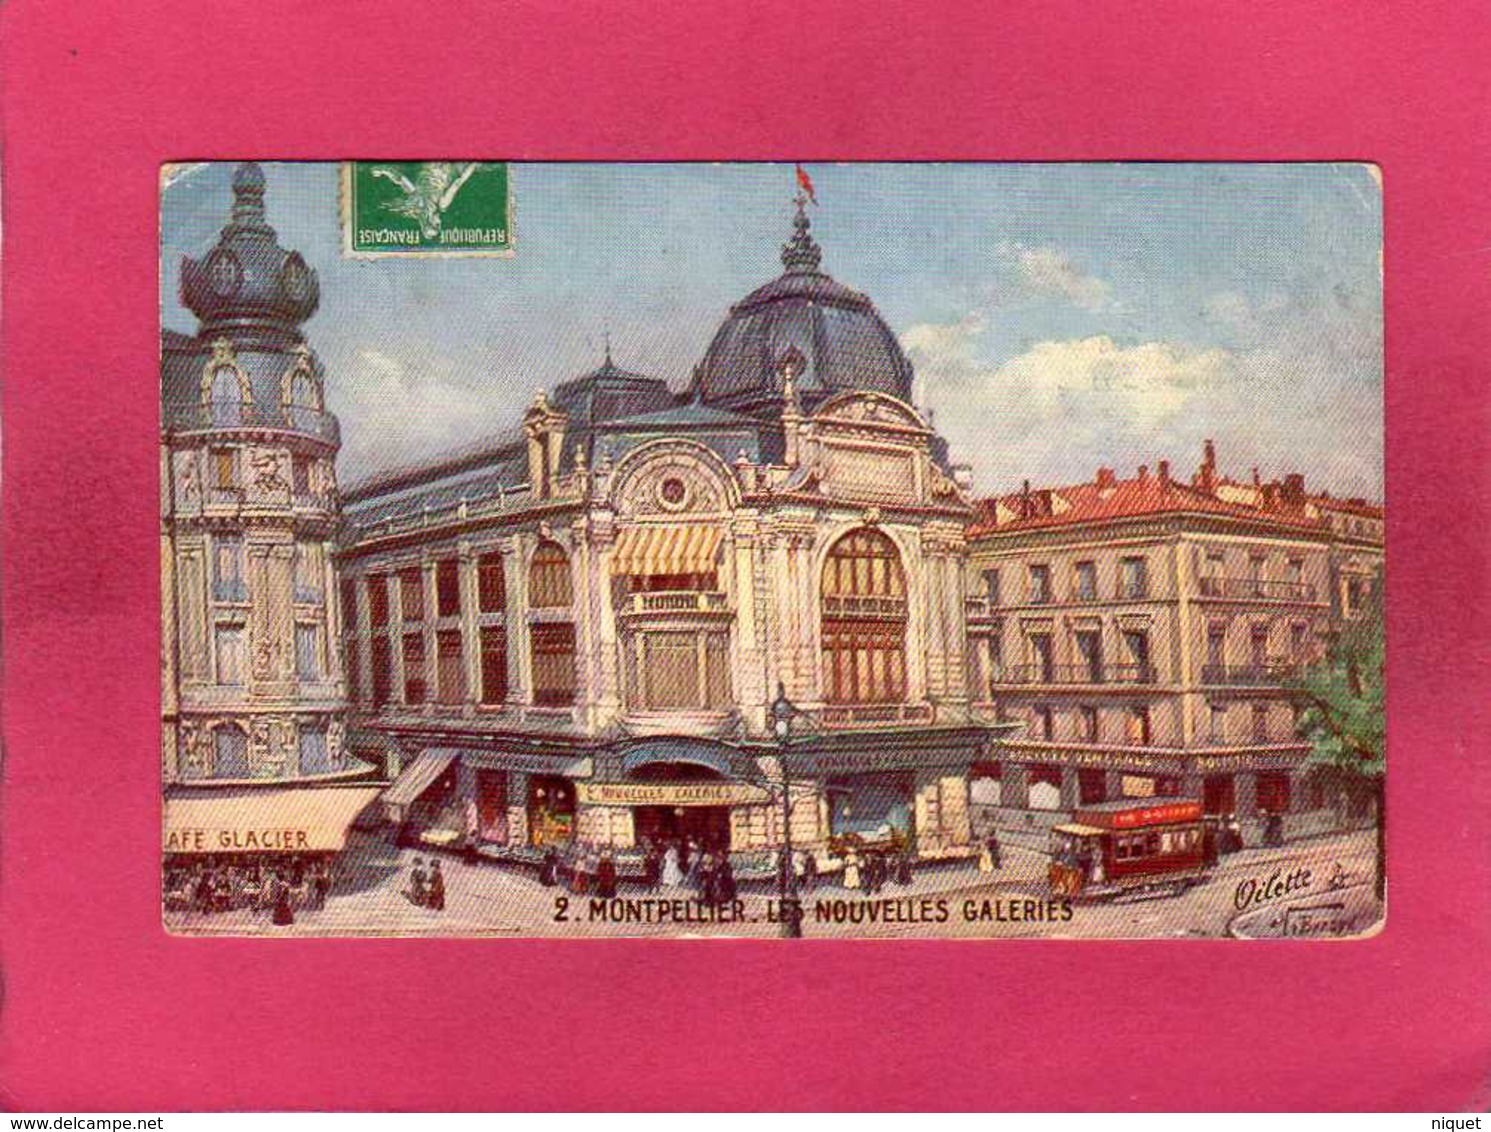 34 Hérault, Montpellier, Les Nouvelles Galeries, Animée, Commerces, Colorisée, 1912, Illustration Signée, (Oilette) - Montpellier